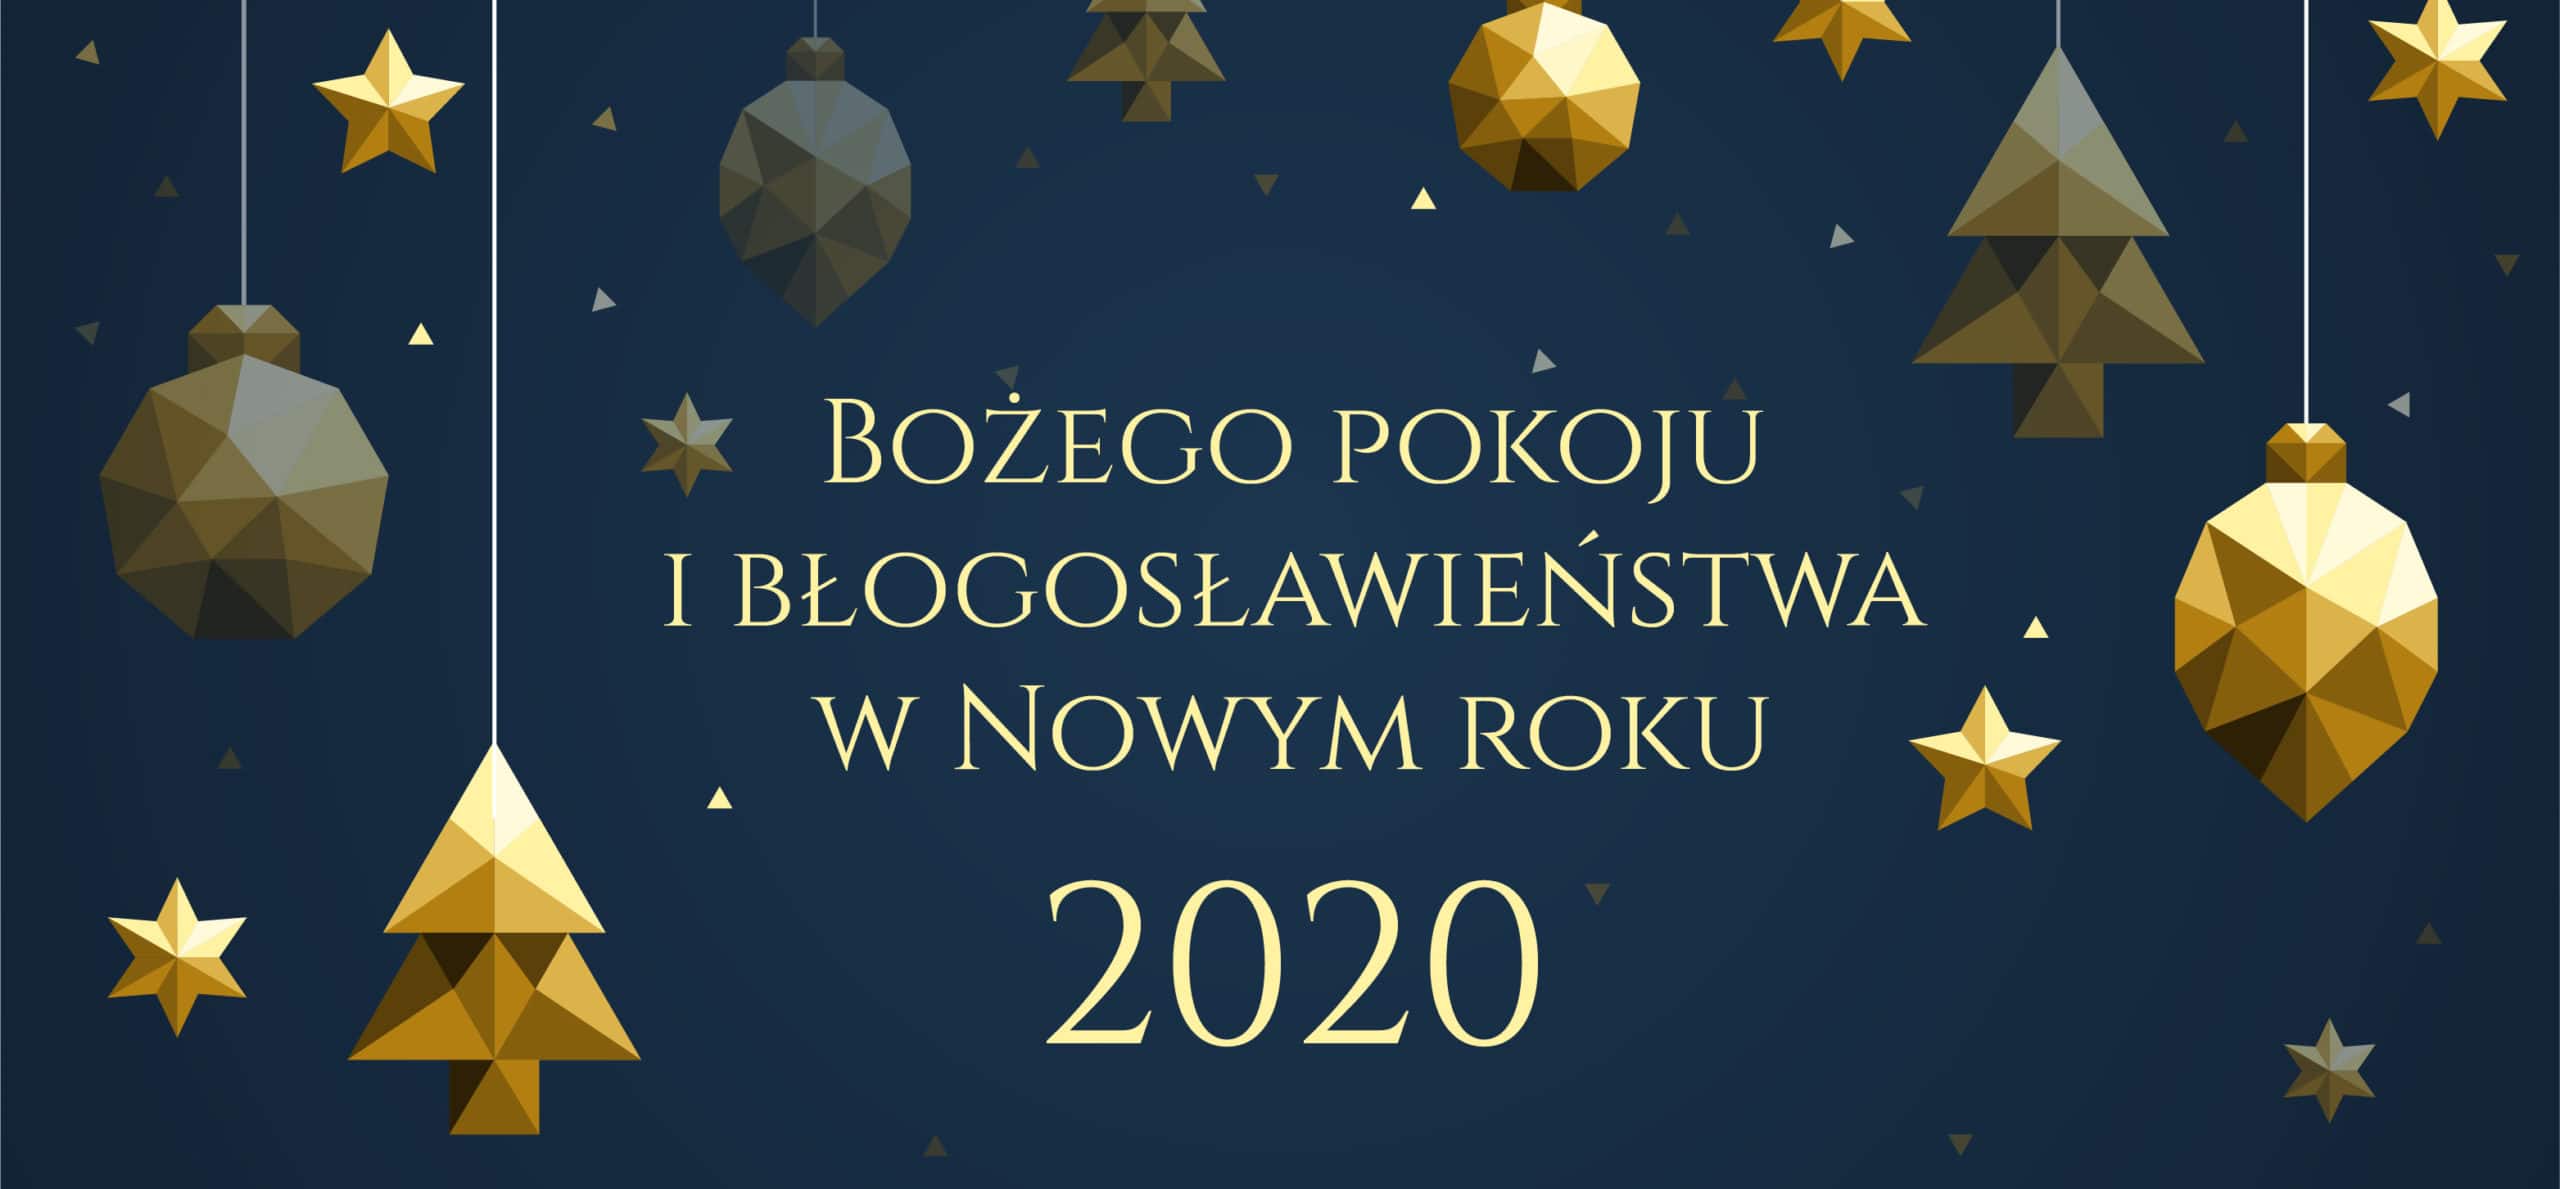 Życzenia na Nowy Rok 2020